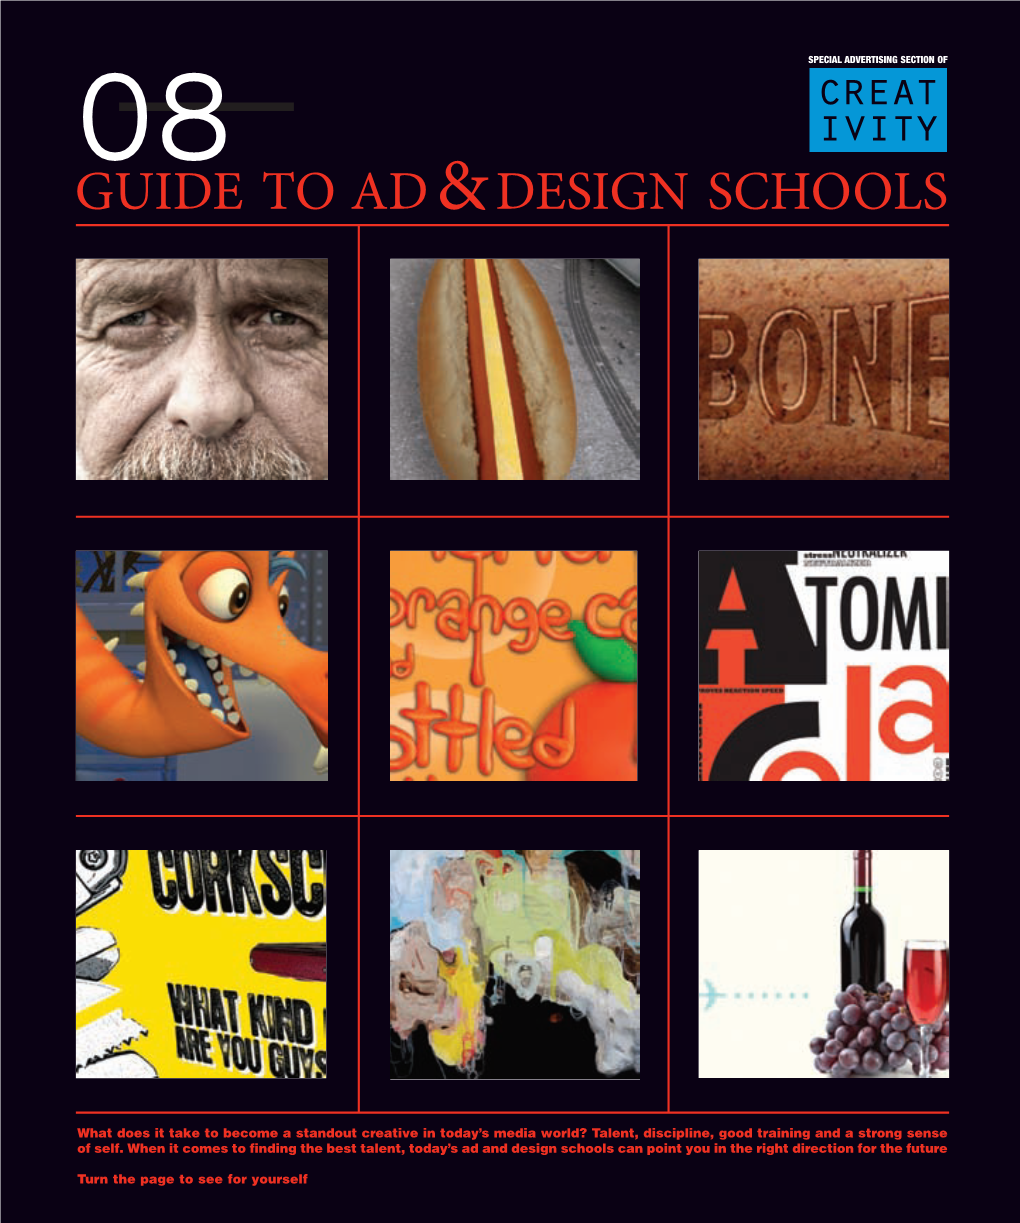 Guide to Ad&Design Schools